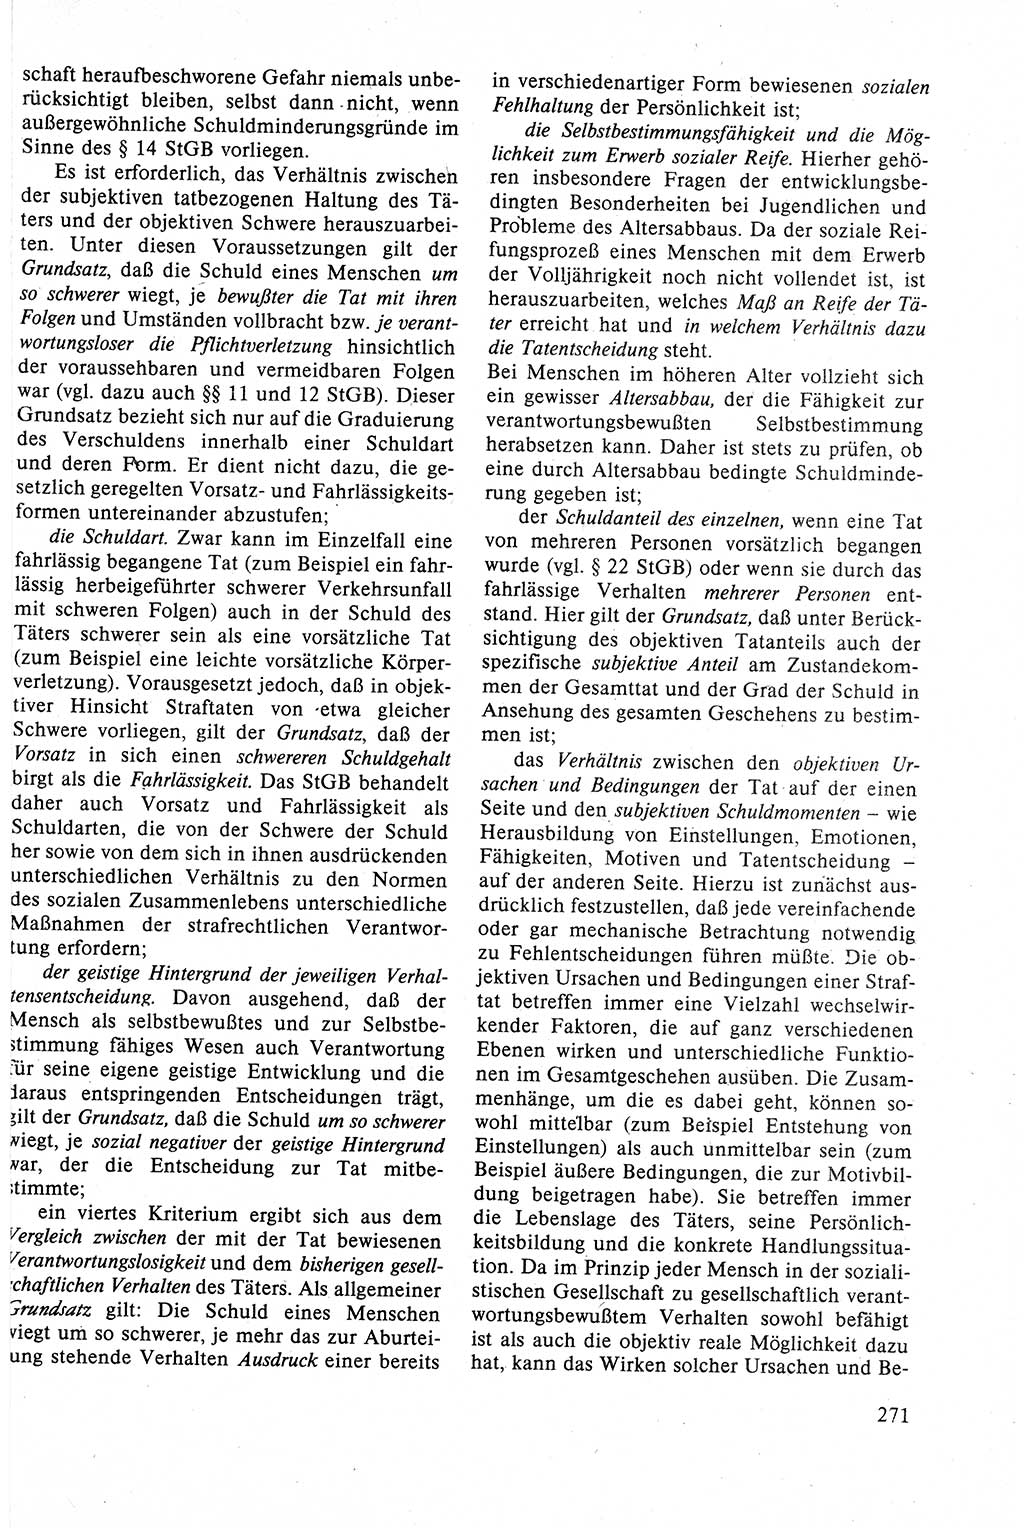 Strafrecht der DDR (Deutsche Demokratische Republik), Lehrbuch 1988, Seite 271 (Strafr. DDR Lb. 1988, S. 271)